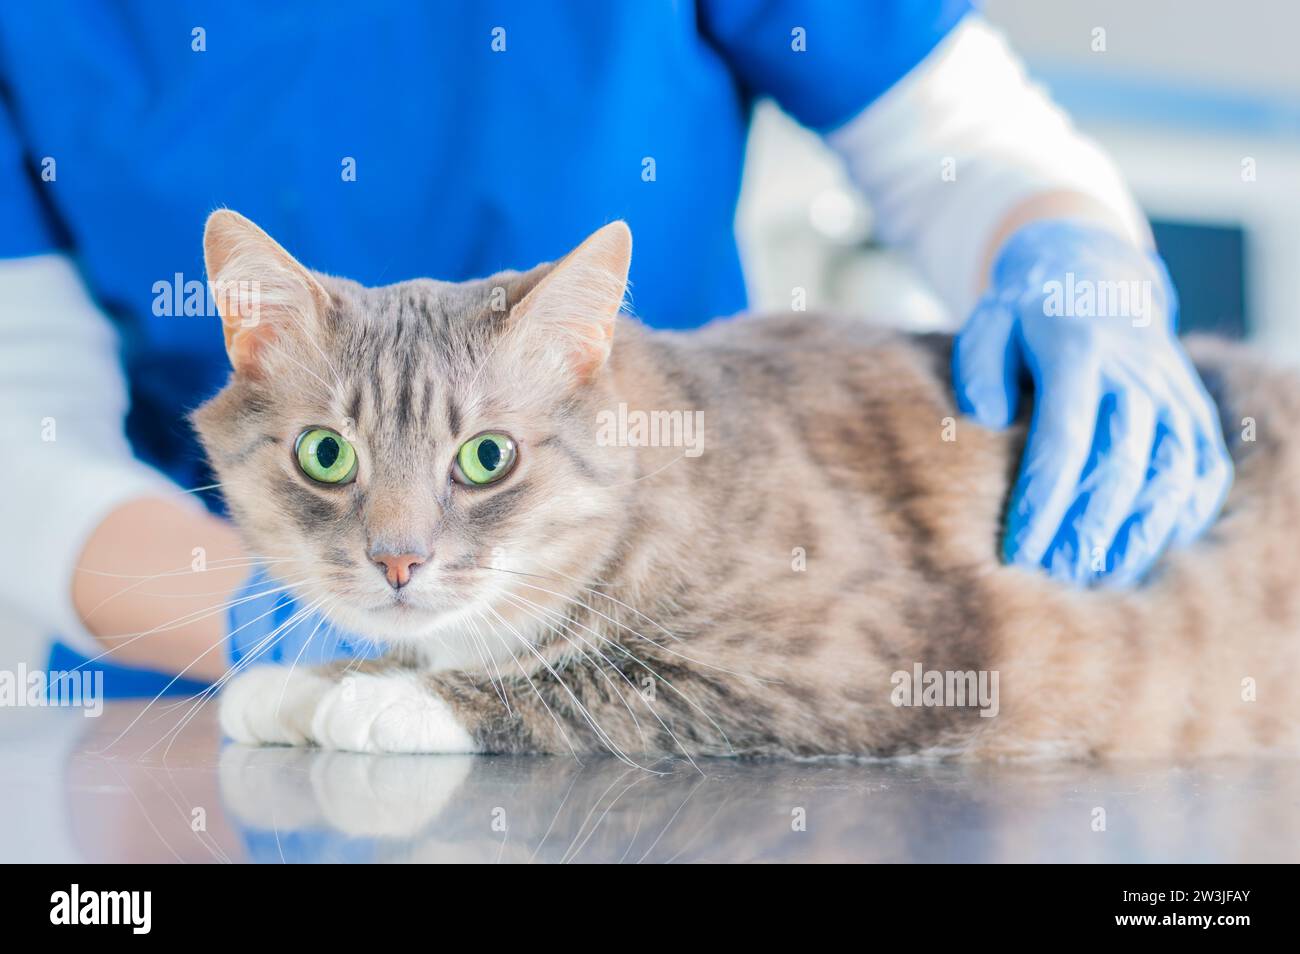 Portrait d'un chat bien nourri sur la table chirurgicale sur le fond des mains du médecin en gants. Concept de médecine vétérinaire. Supports mixtes Banque D'Images